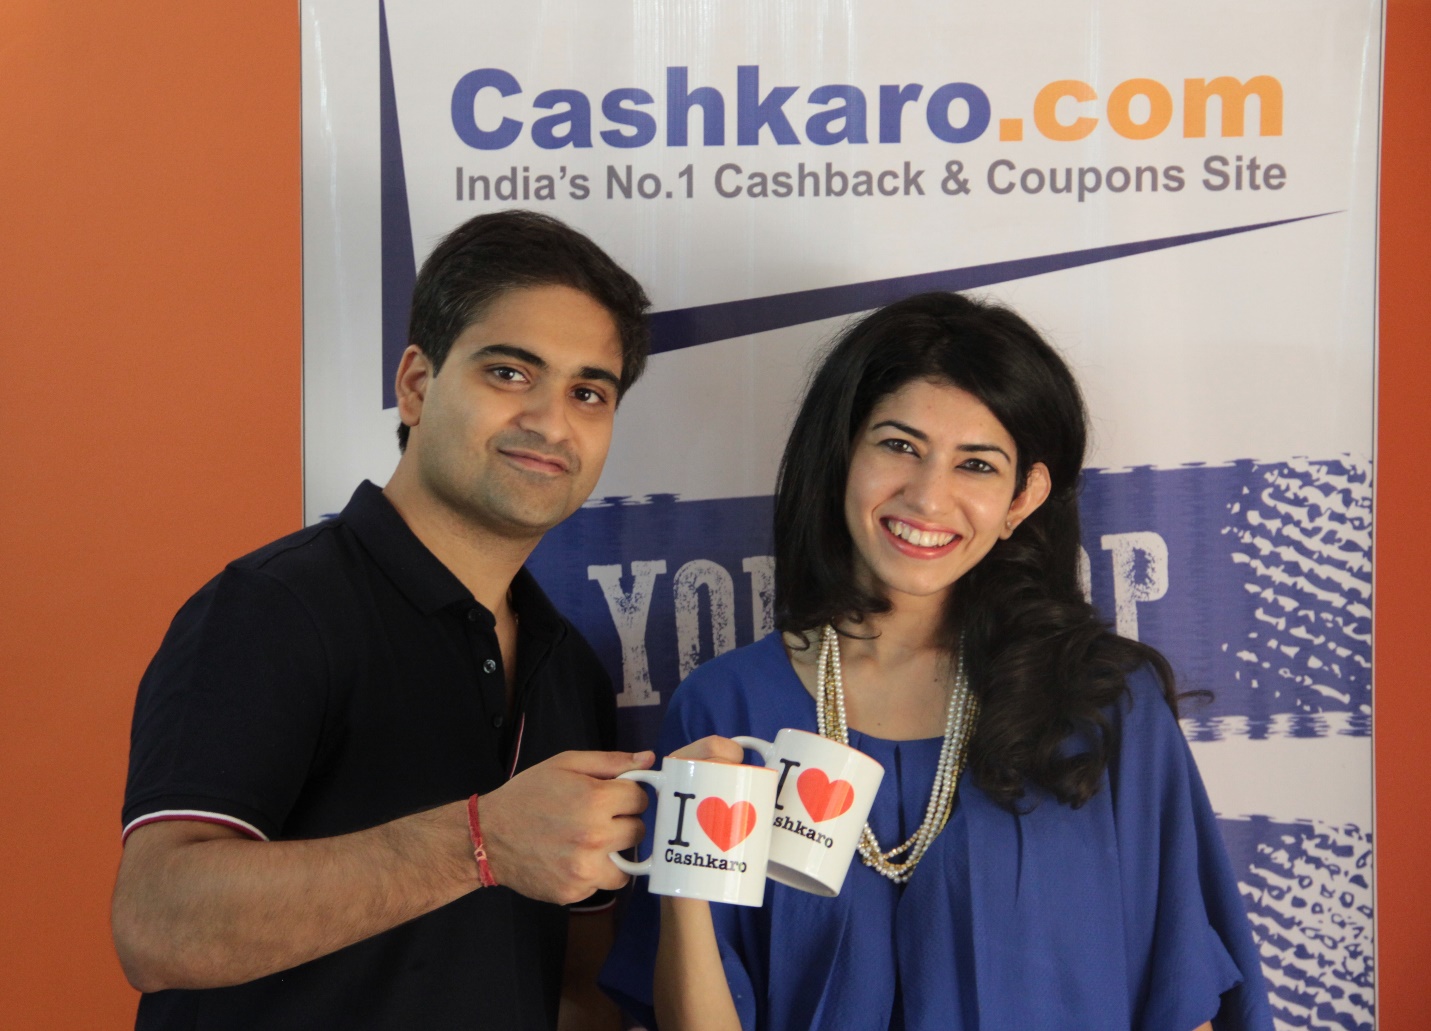 CashKaro founders Rohan and Swati Bhargava